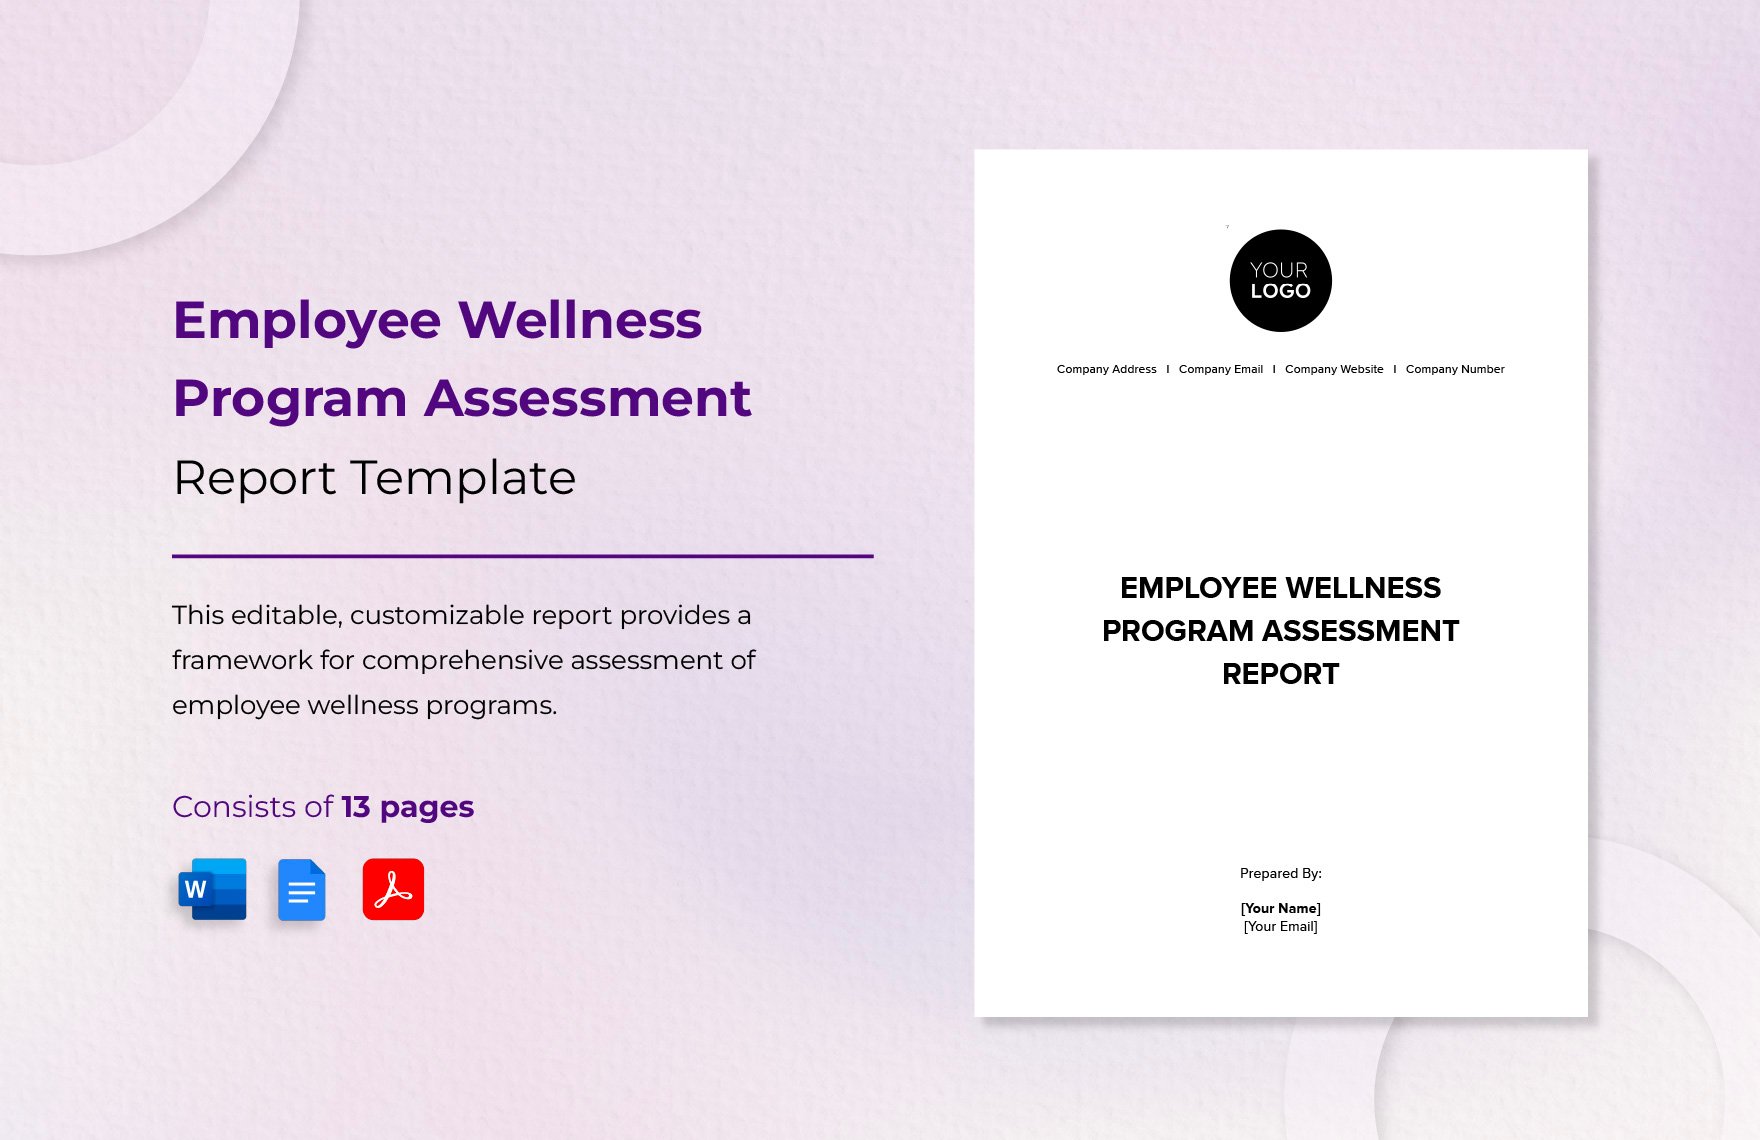 Employee Wellness Program Assessment Report Template